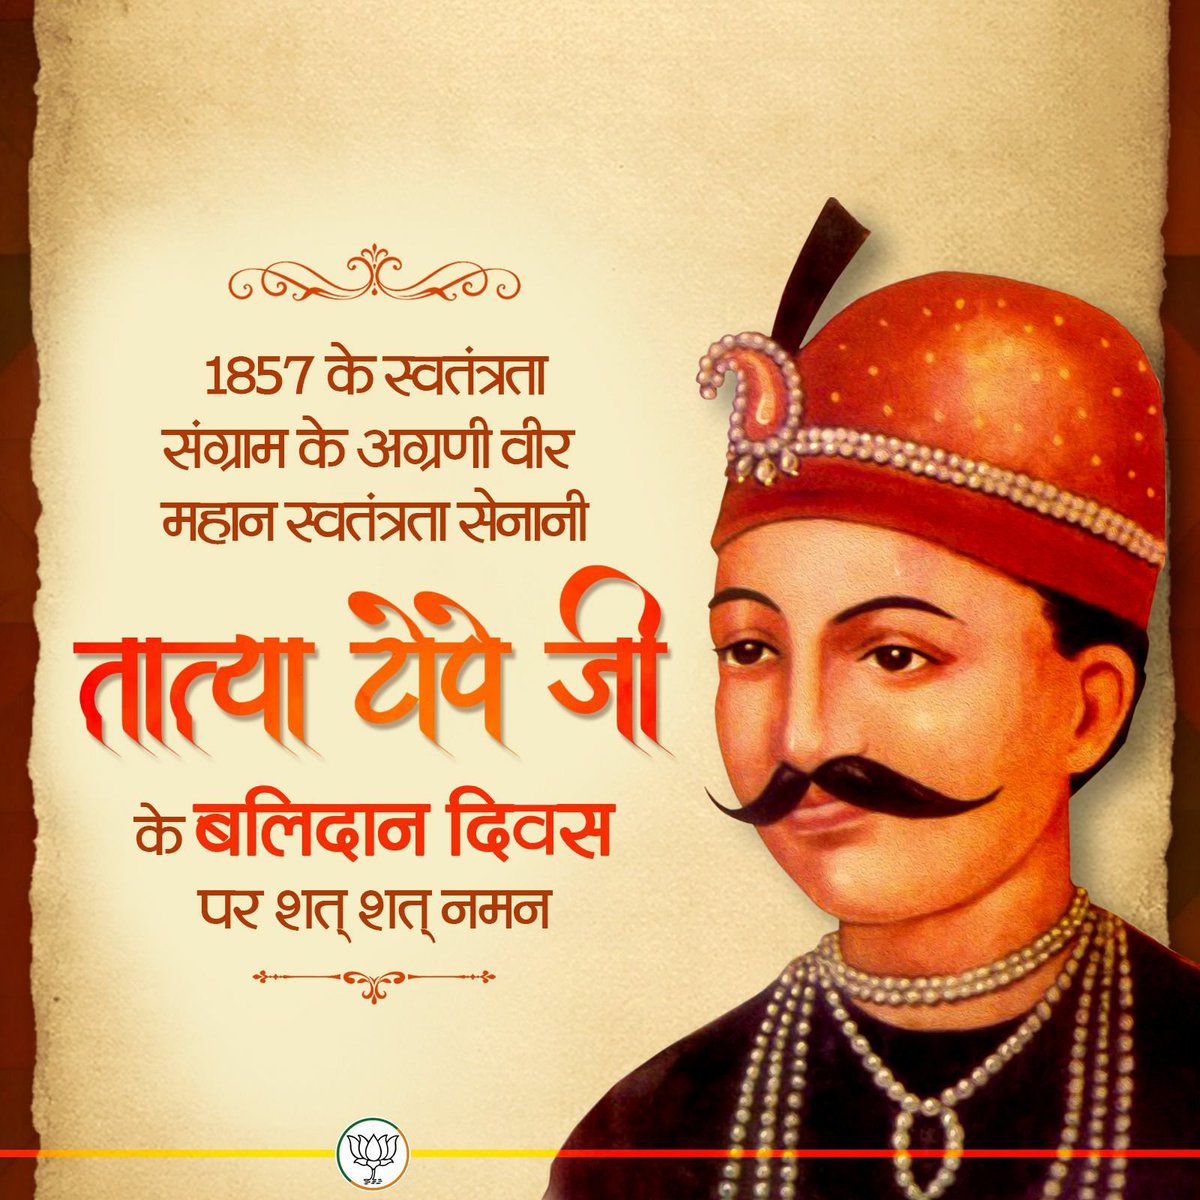 1857 के स्वतंत्रता संग्राम के अग्रणी वीर महान स्वतंत्रता सेनानी #तात्या_टोपे जी के बलिदान दिवस पर शत्-शत् नमन। #TatyaTope